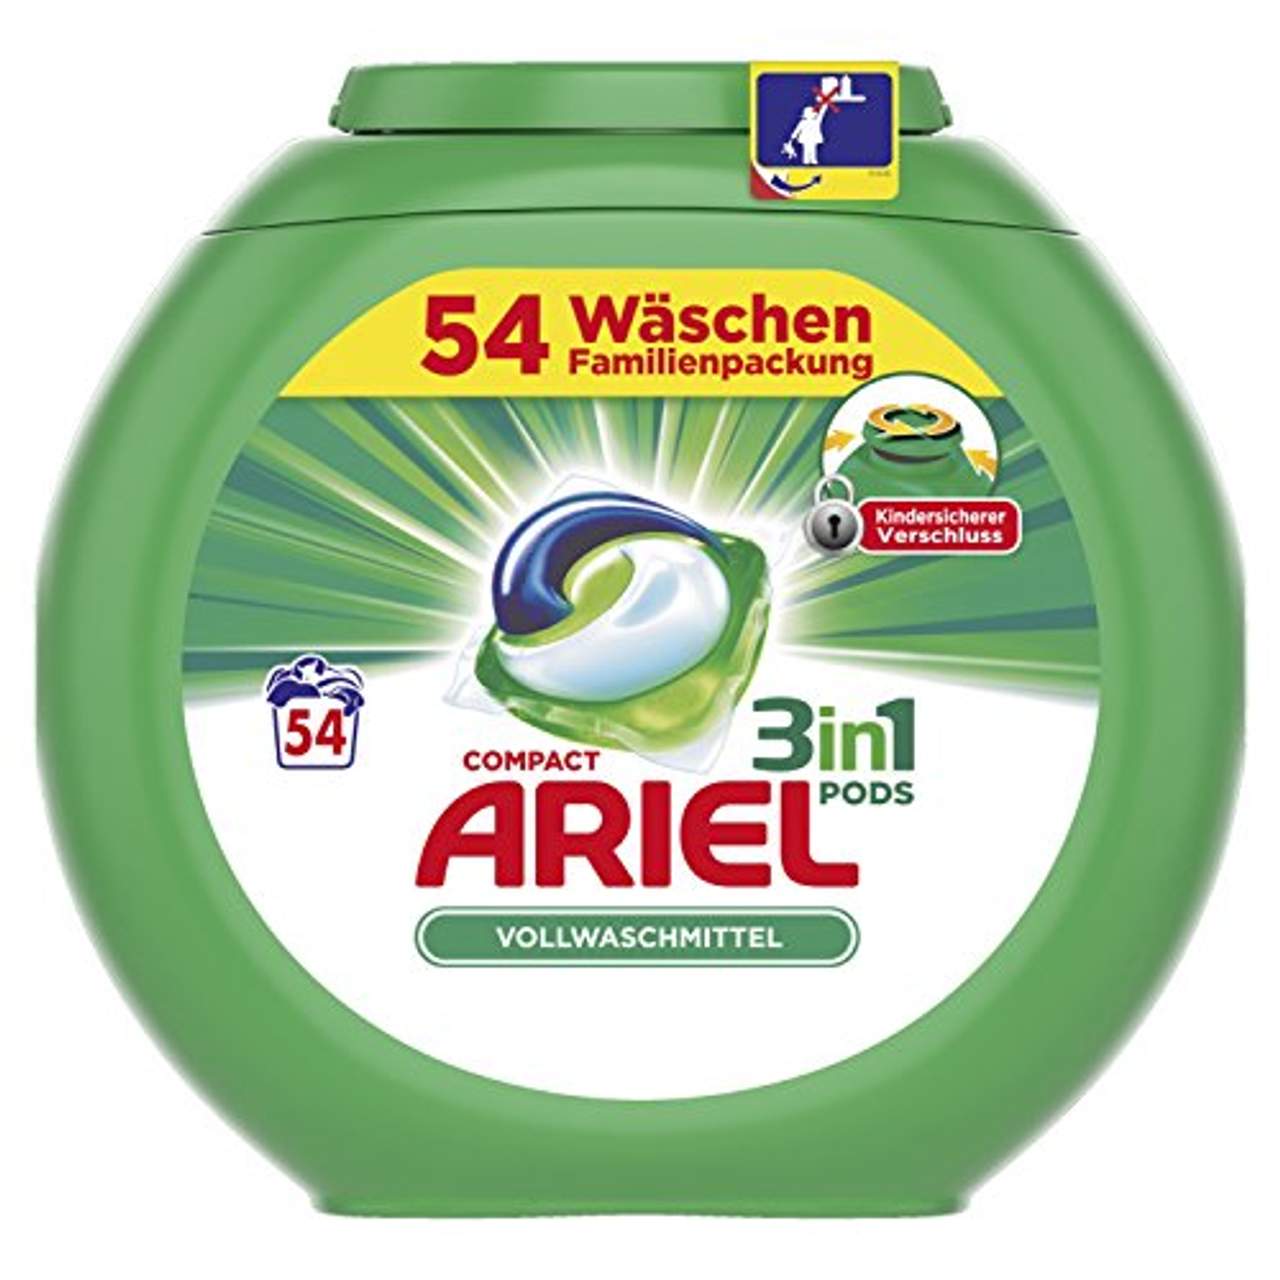 Ariel 3in1 Pods Vollwaschmittel